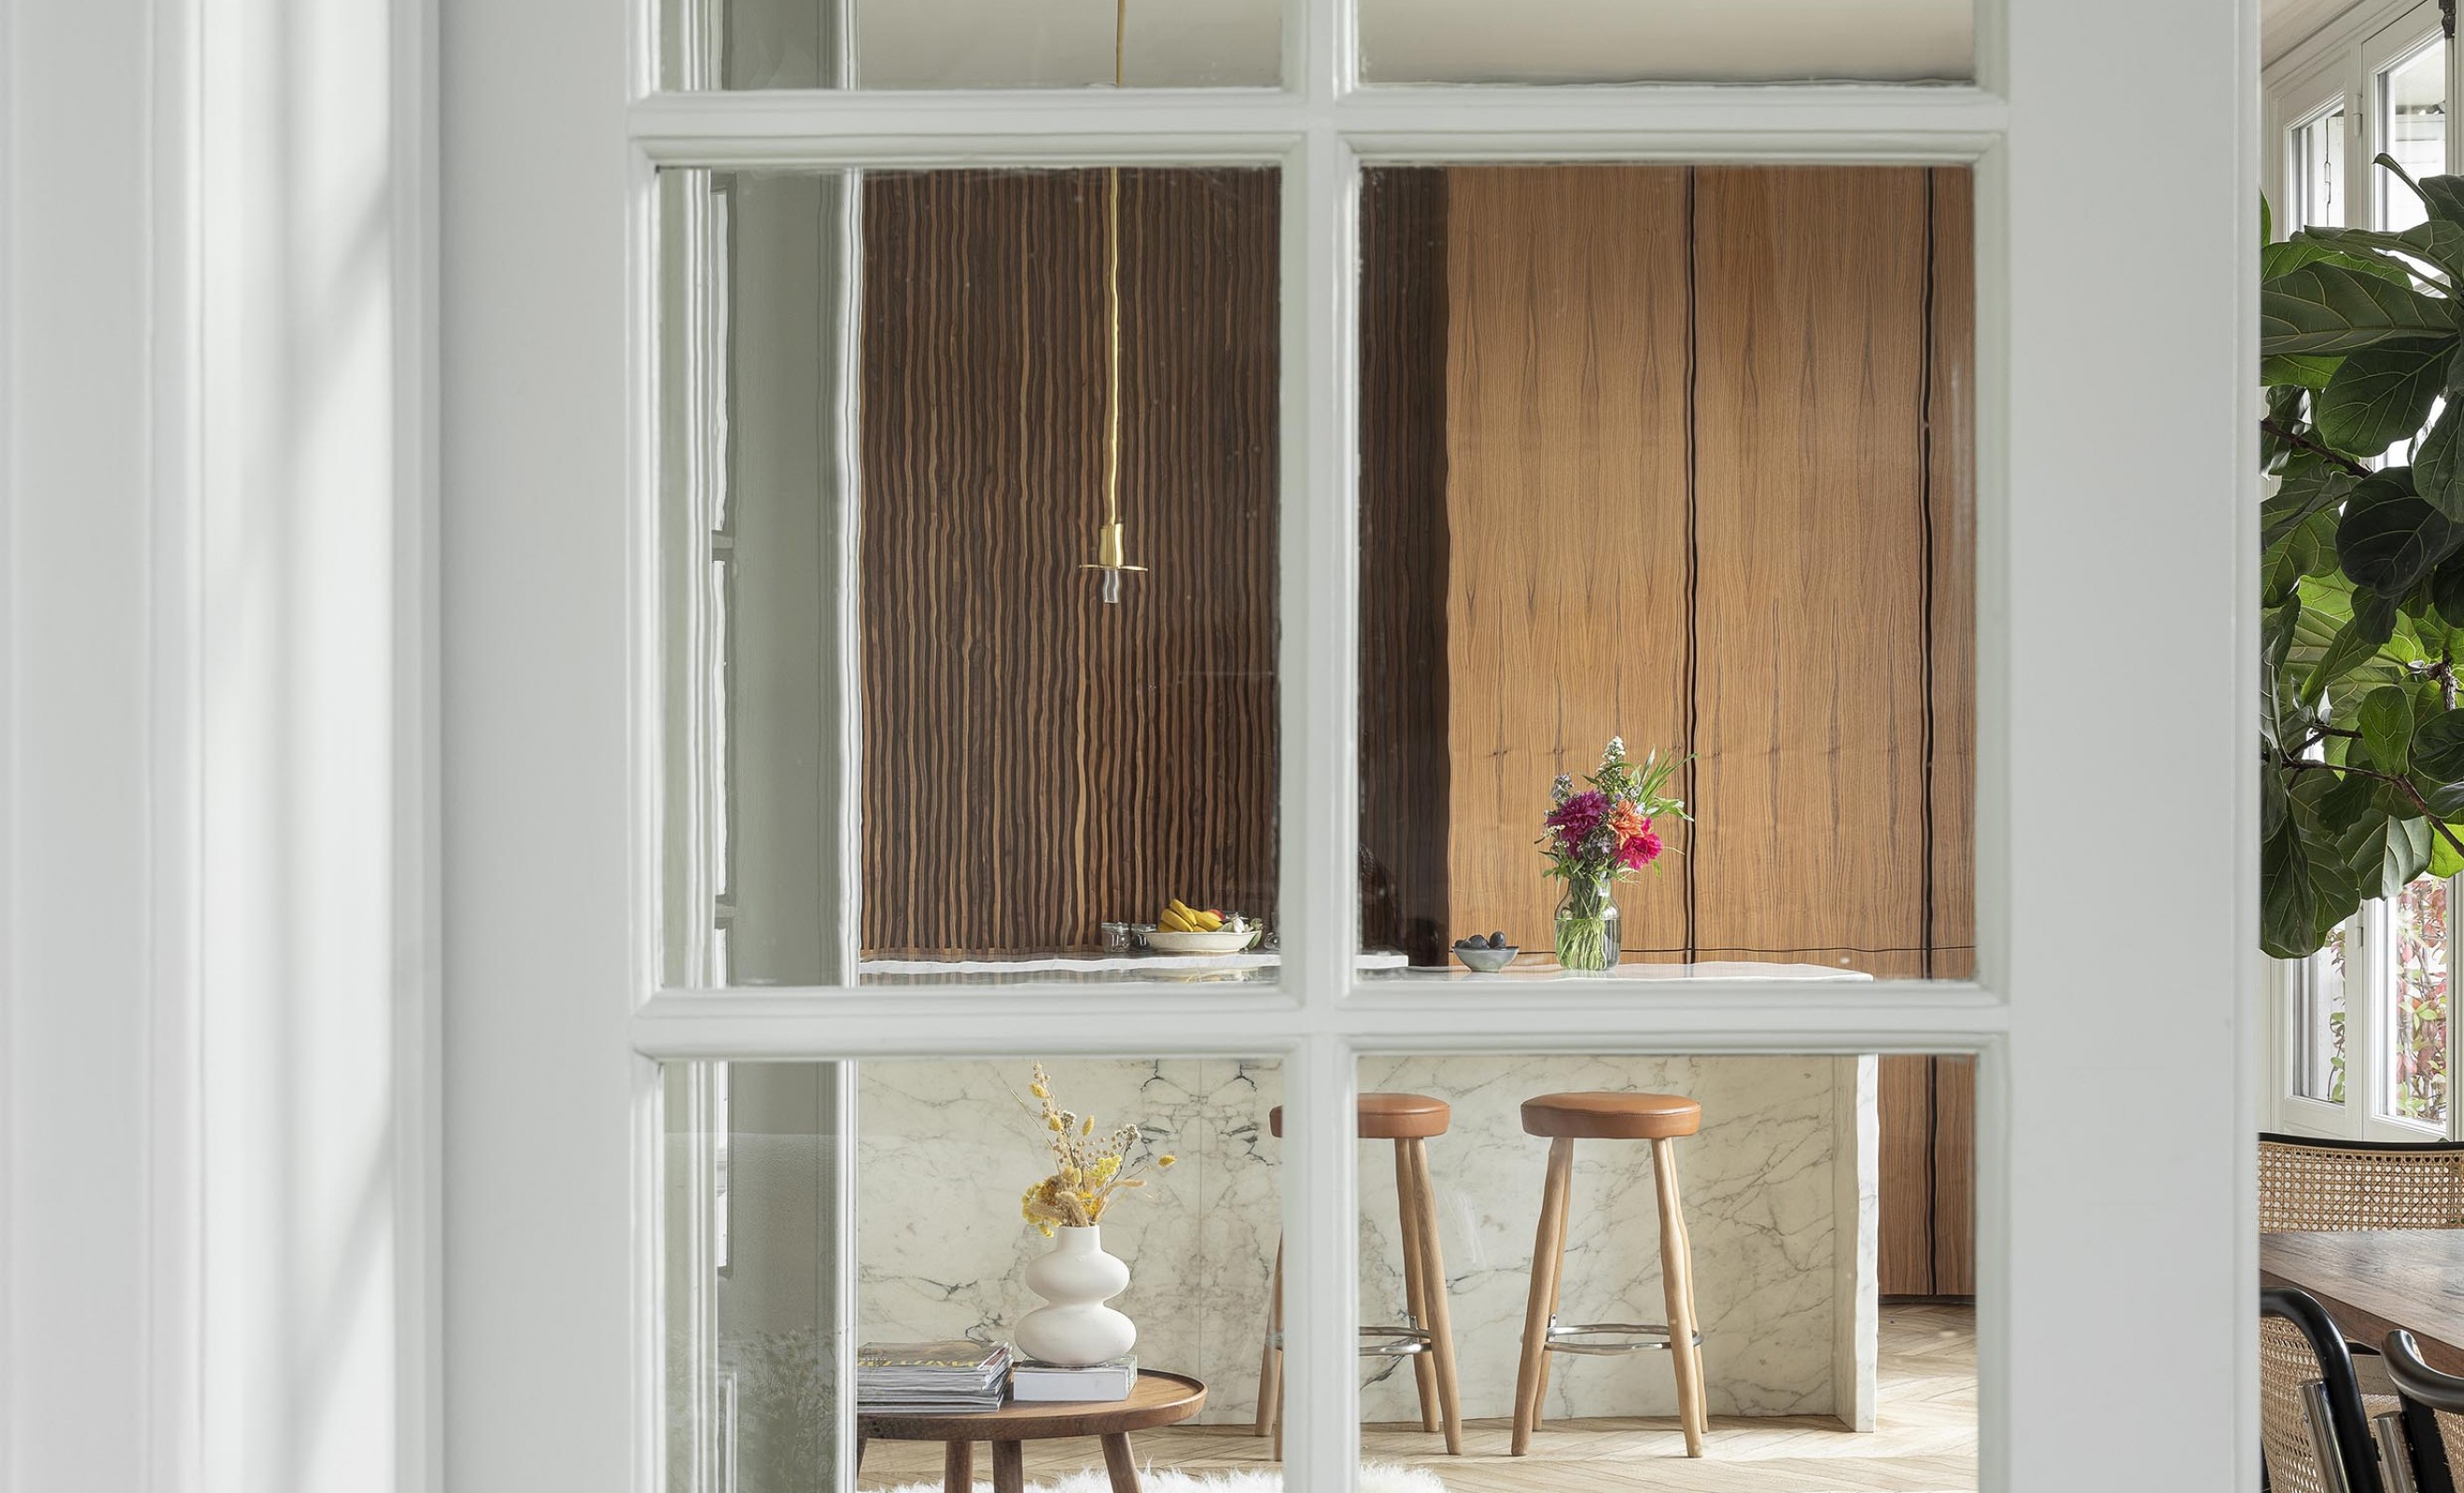 Discreet binnenkijken in een privé flat in Paris: een realisatie van Marie-Astrid Pelser  Victors Design Agency